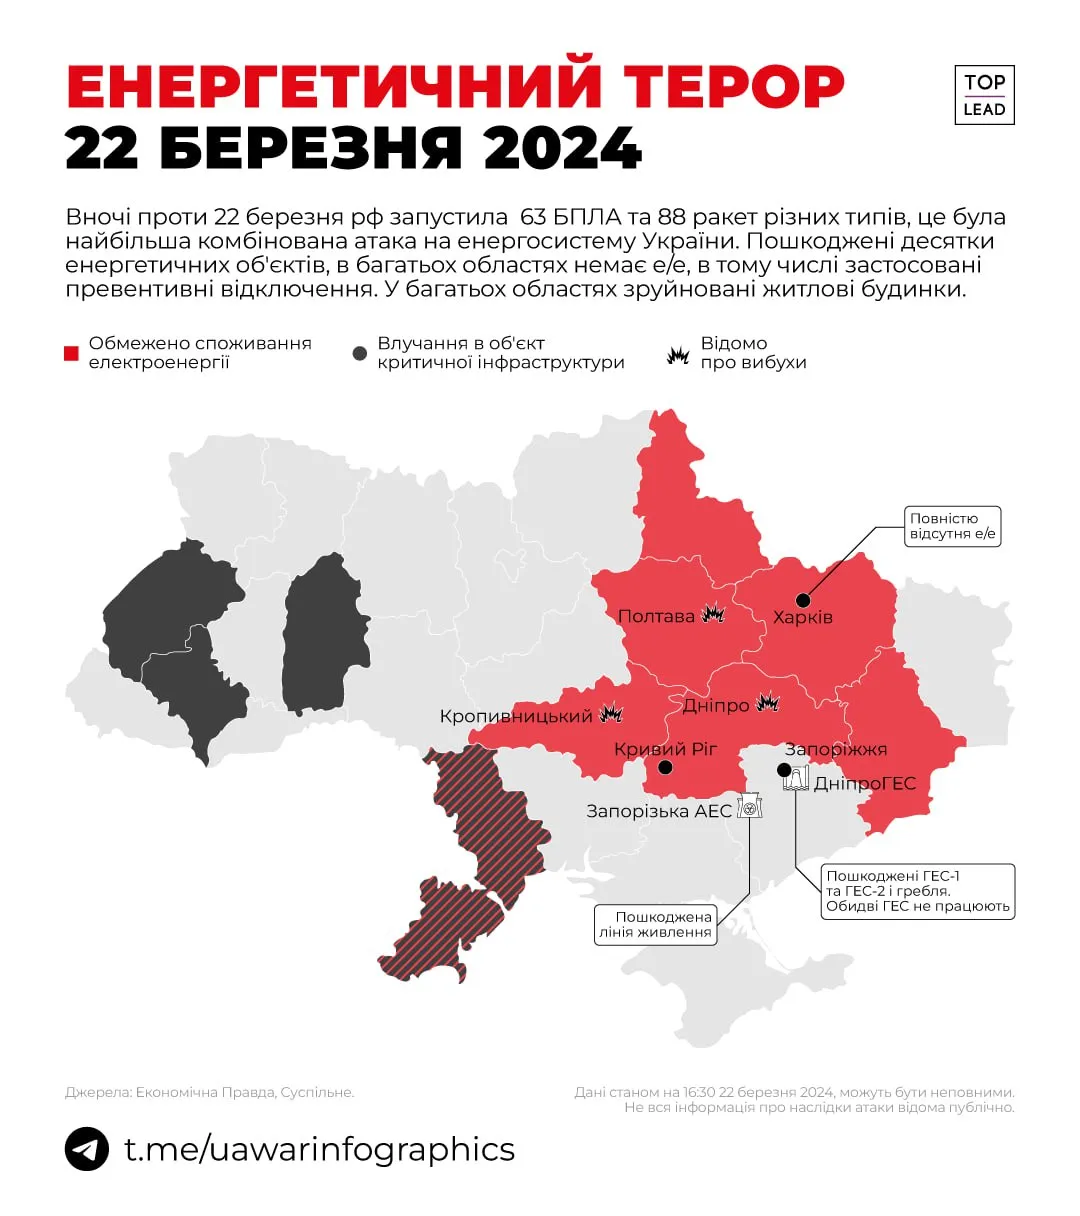 масована атака по Україні - карта уражень, в які об'єкти енергетики влучили росіяни 22 березня 2024